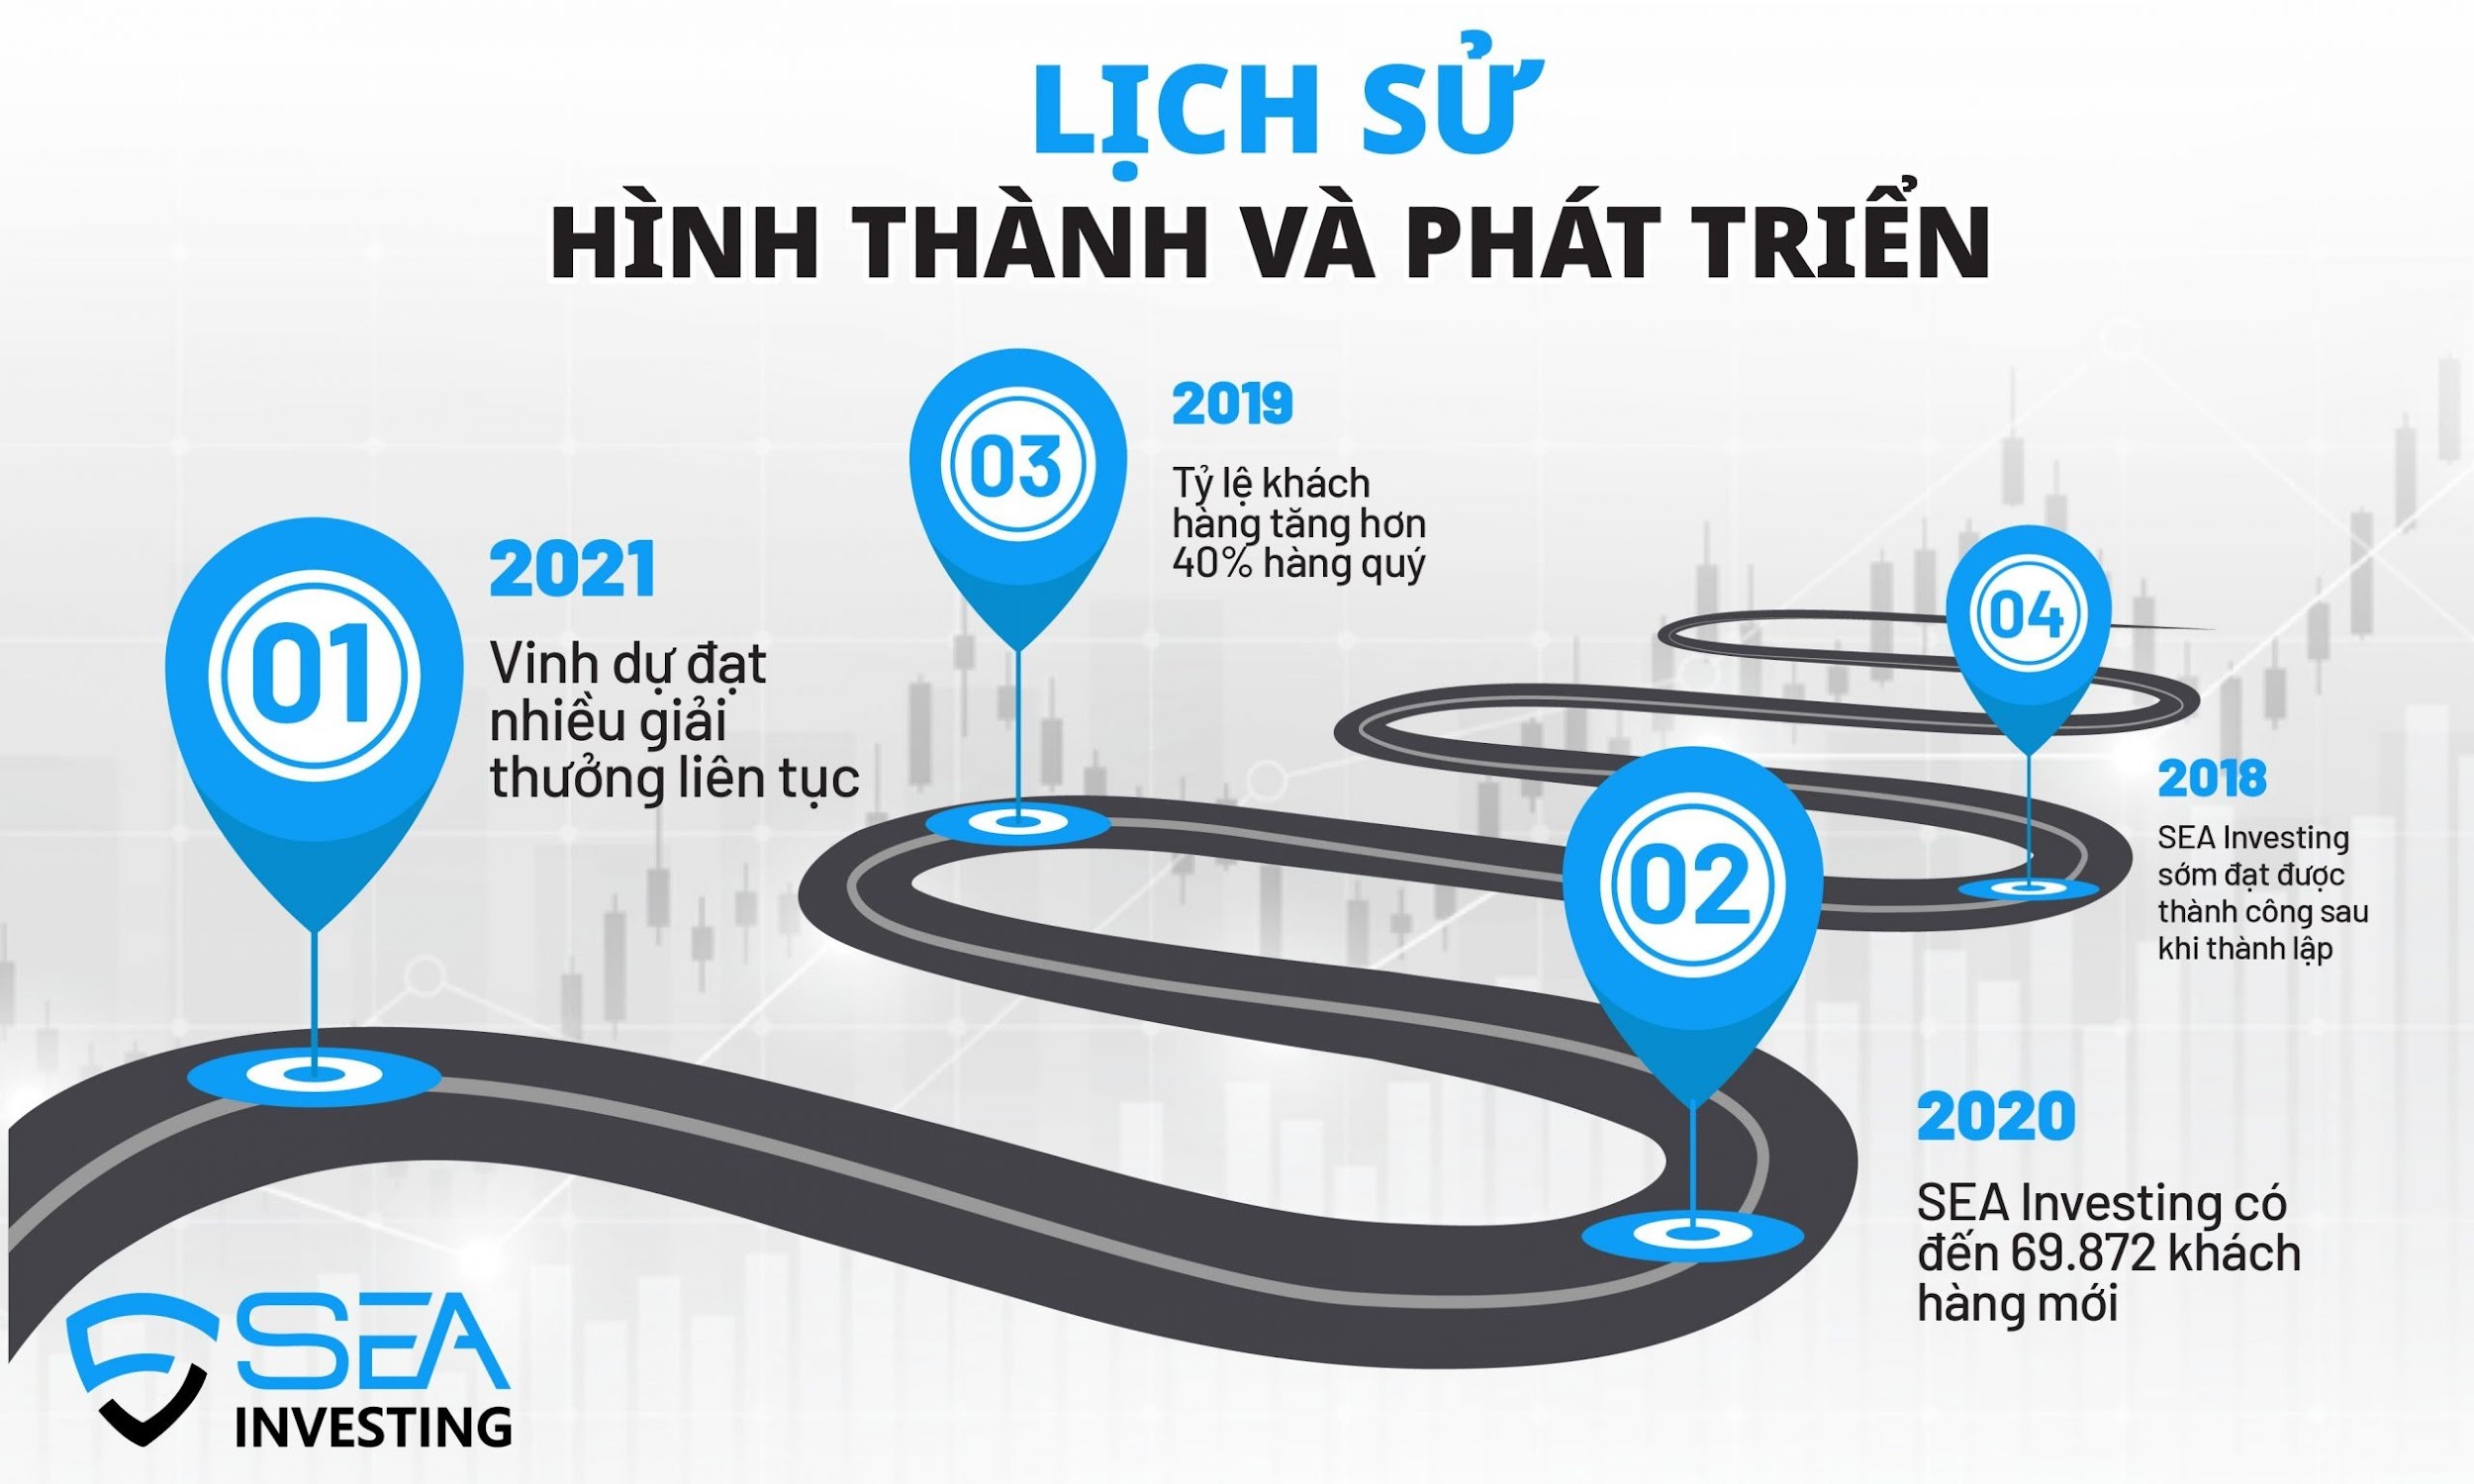 sea investing Việt Nam